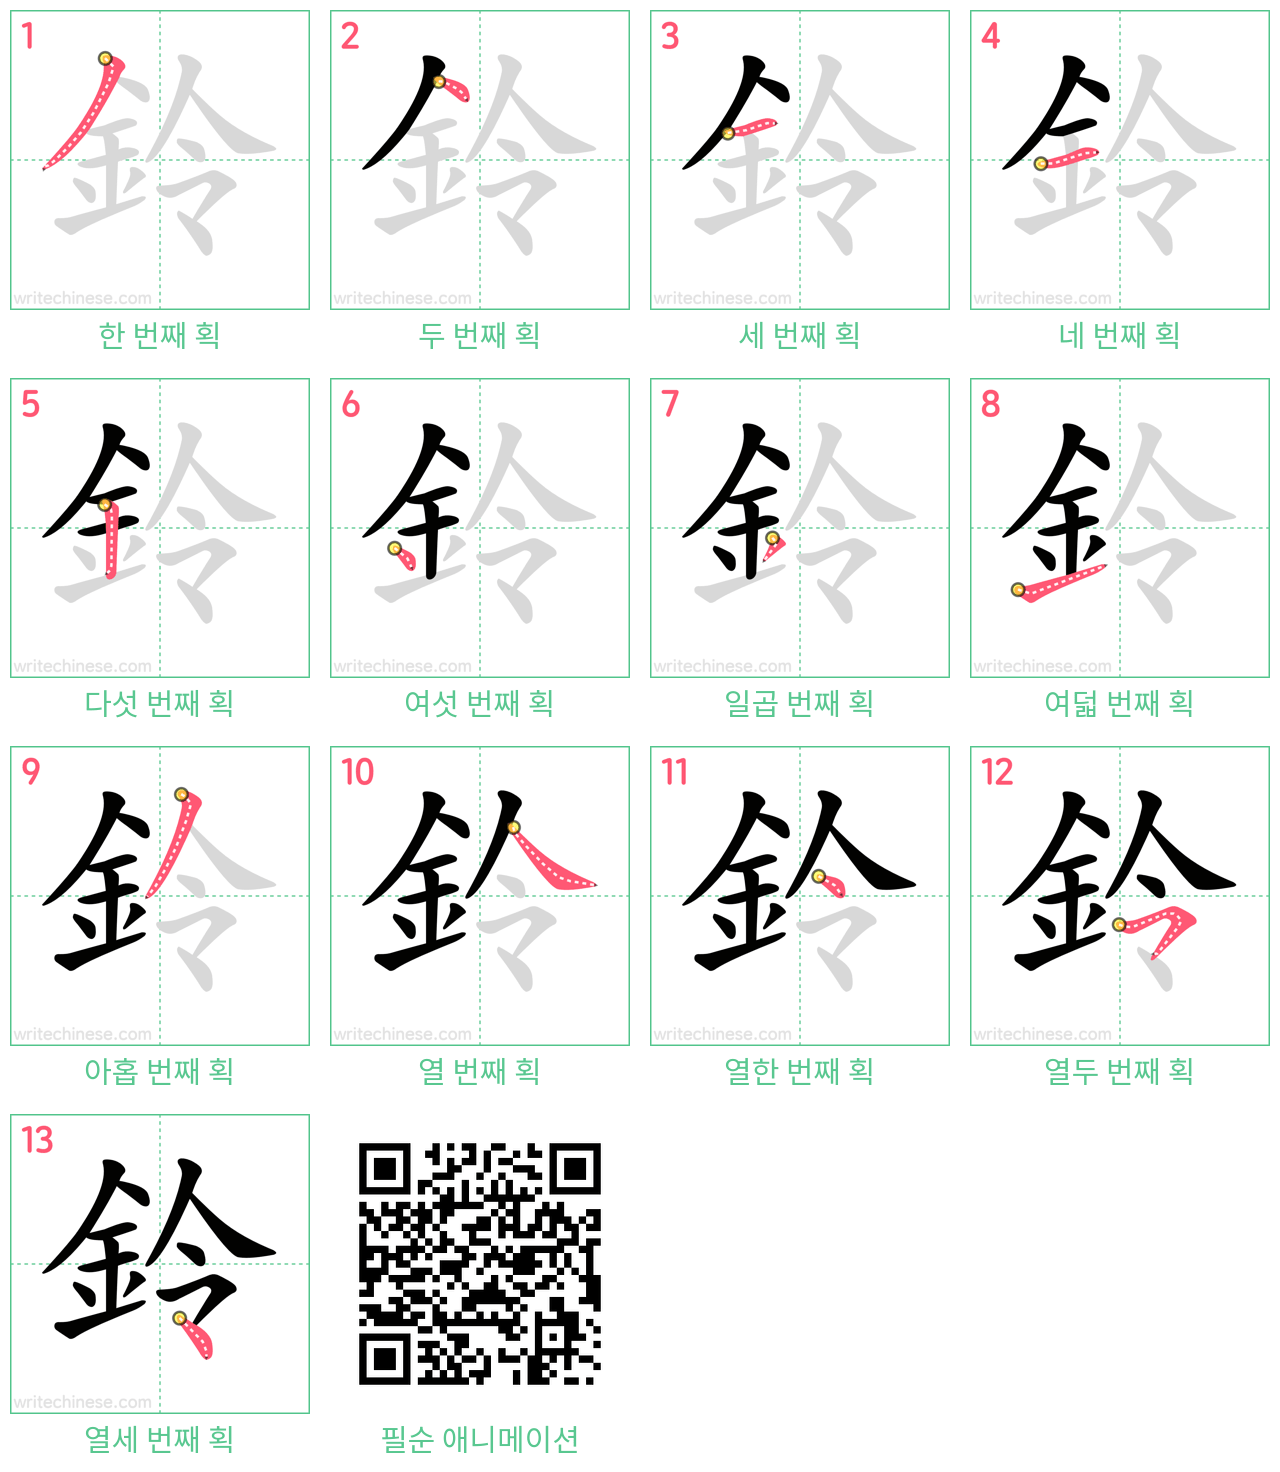 鈴 step-by-step stroke order diagrams